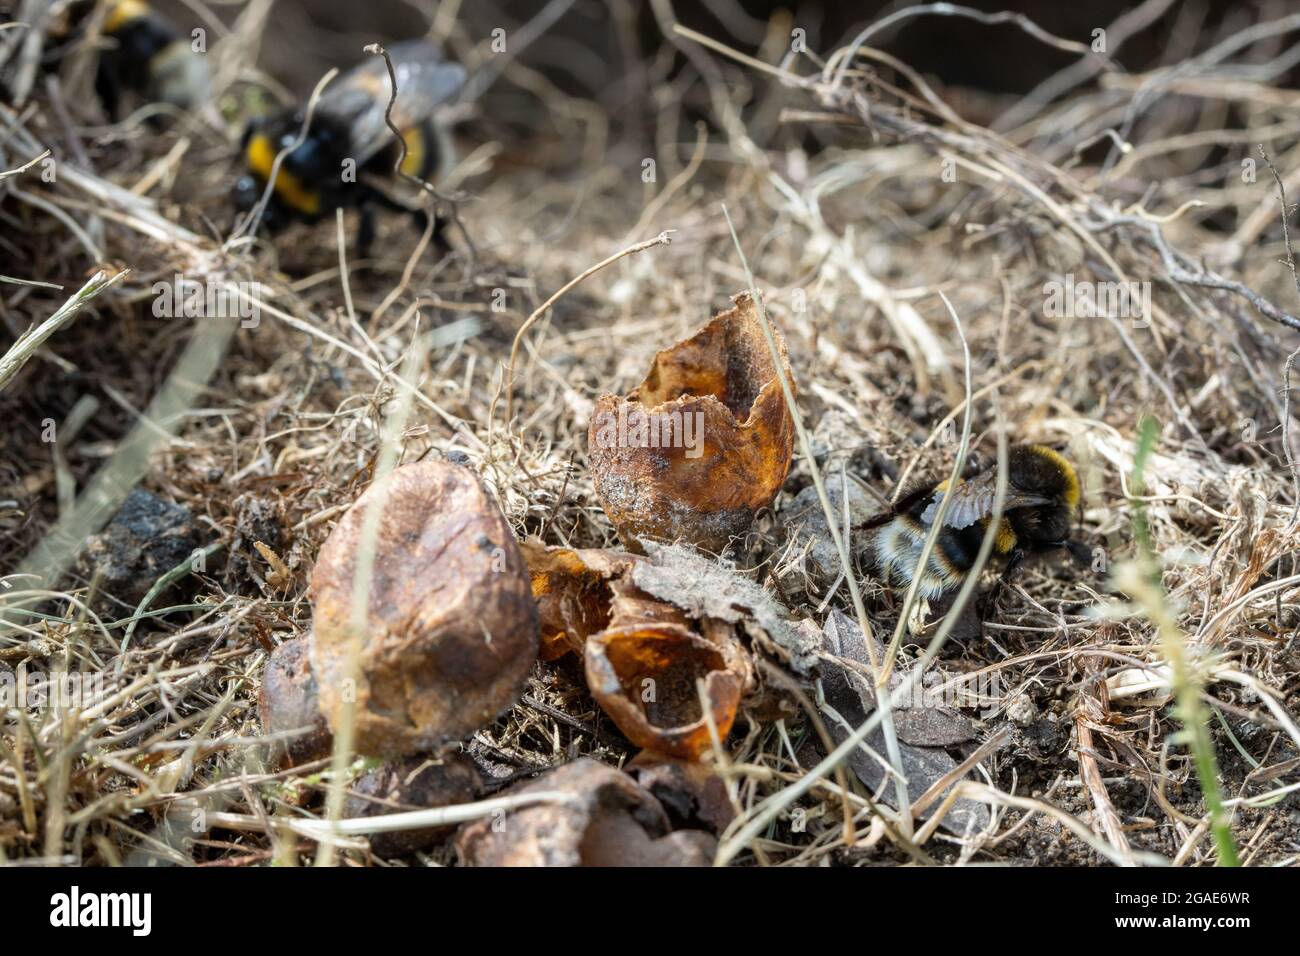 Des œufs d'abeilles bourdonnantes à queue de chamois sur le bord d'un nid de lapin qui semble avoir été prédaté (Bombus terrestris), West Yorkshire, Royaume-Uni Banque D'Images